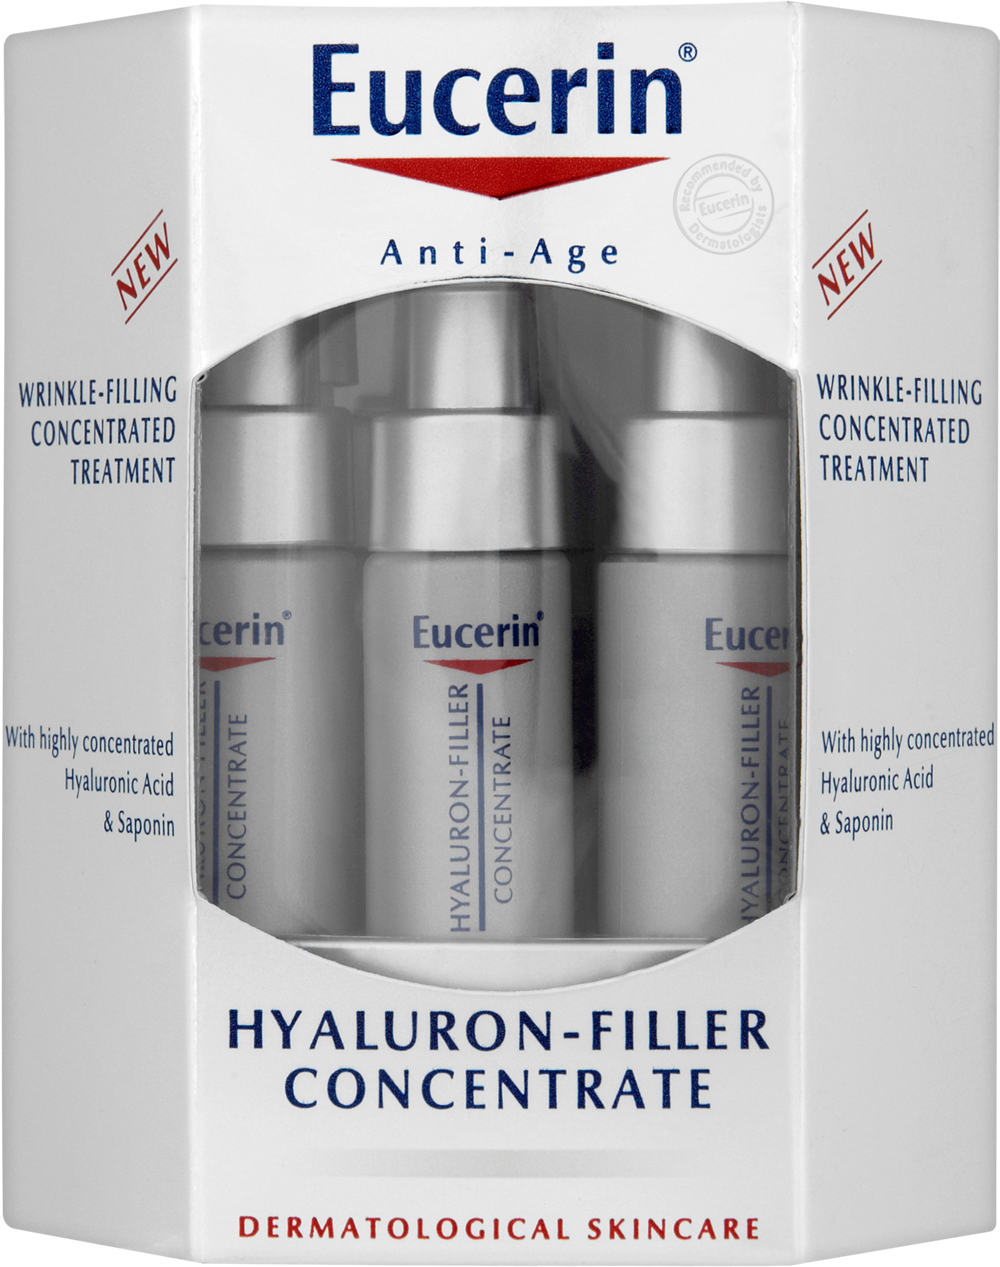 Eucerin Hyaluron Filler concentrat: